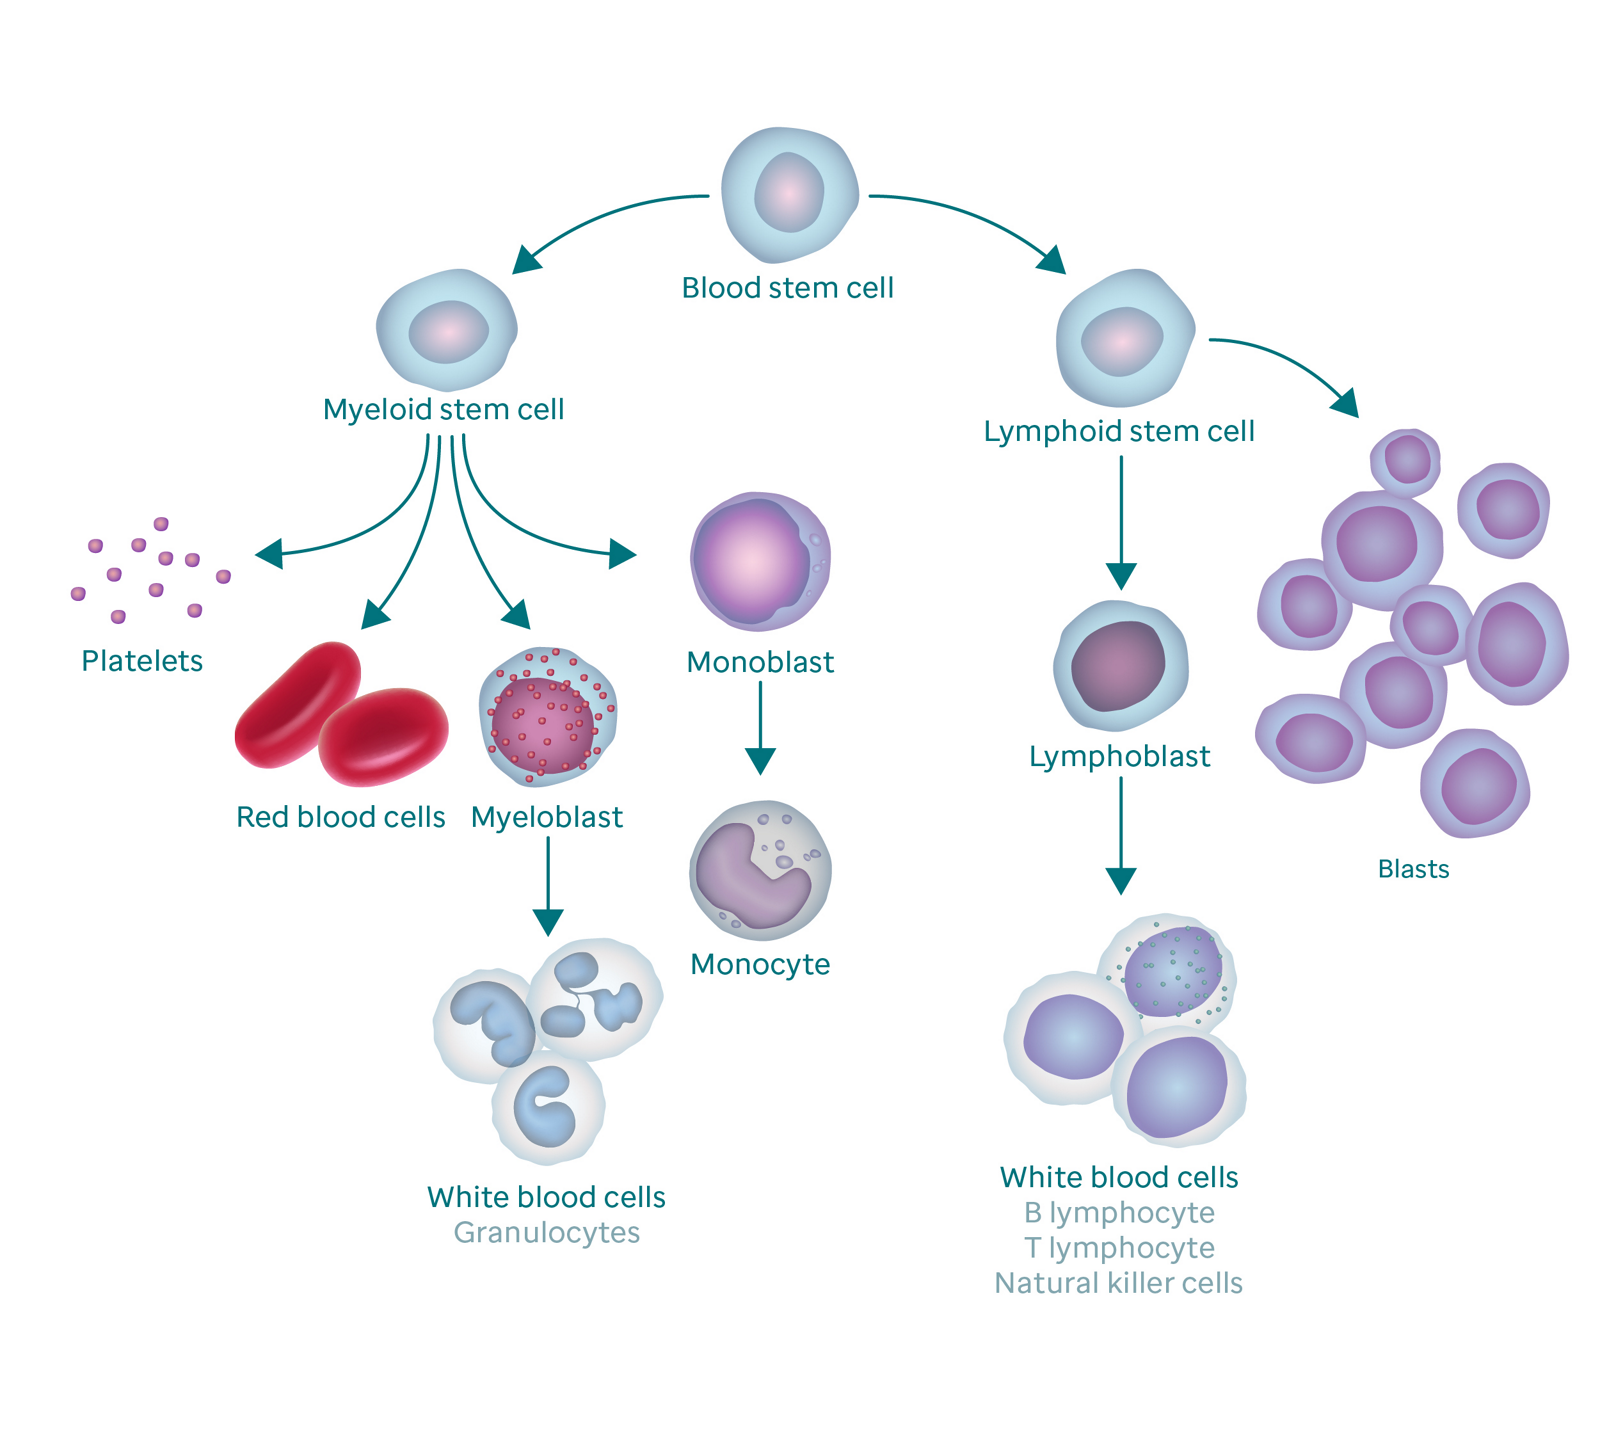 Kan oluşturma sürecini ve bunun patlama hücrelerine nasıl yol açtığını gösteren grafik.  Grafik bir kan kök hücresi ile başlar.  Solda, trombositlere, kırmızı kan hücrelerine, miyeloblasta ve monoblasta dallanan miyeloid kök hücreye ayrılır.  Miyeloblast, beyaz kan hücrelerine (granülositler olarak da adlandırılır) dönüşür ve monoblast, bir monosite dönüşür.  Kan kök hücresinin sağ dalı, lenfoblastlara (beyaz kan hücrelerine dönüşür) ve blast hücrelerine dallanan lenfoid kök hücreye gider.